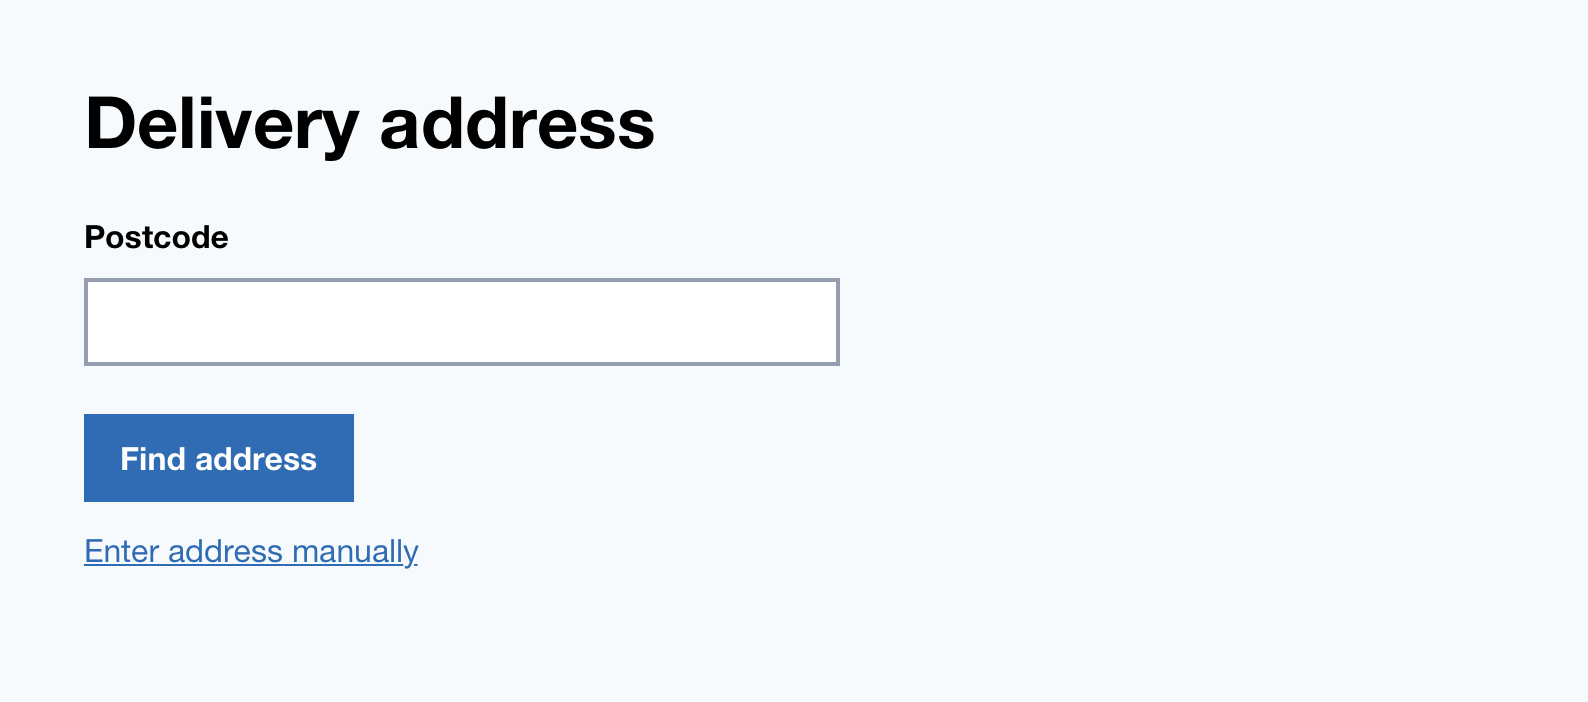 Delivery address form split